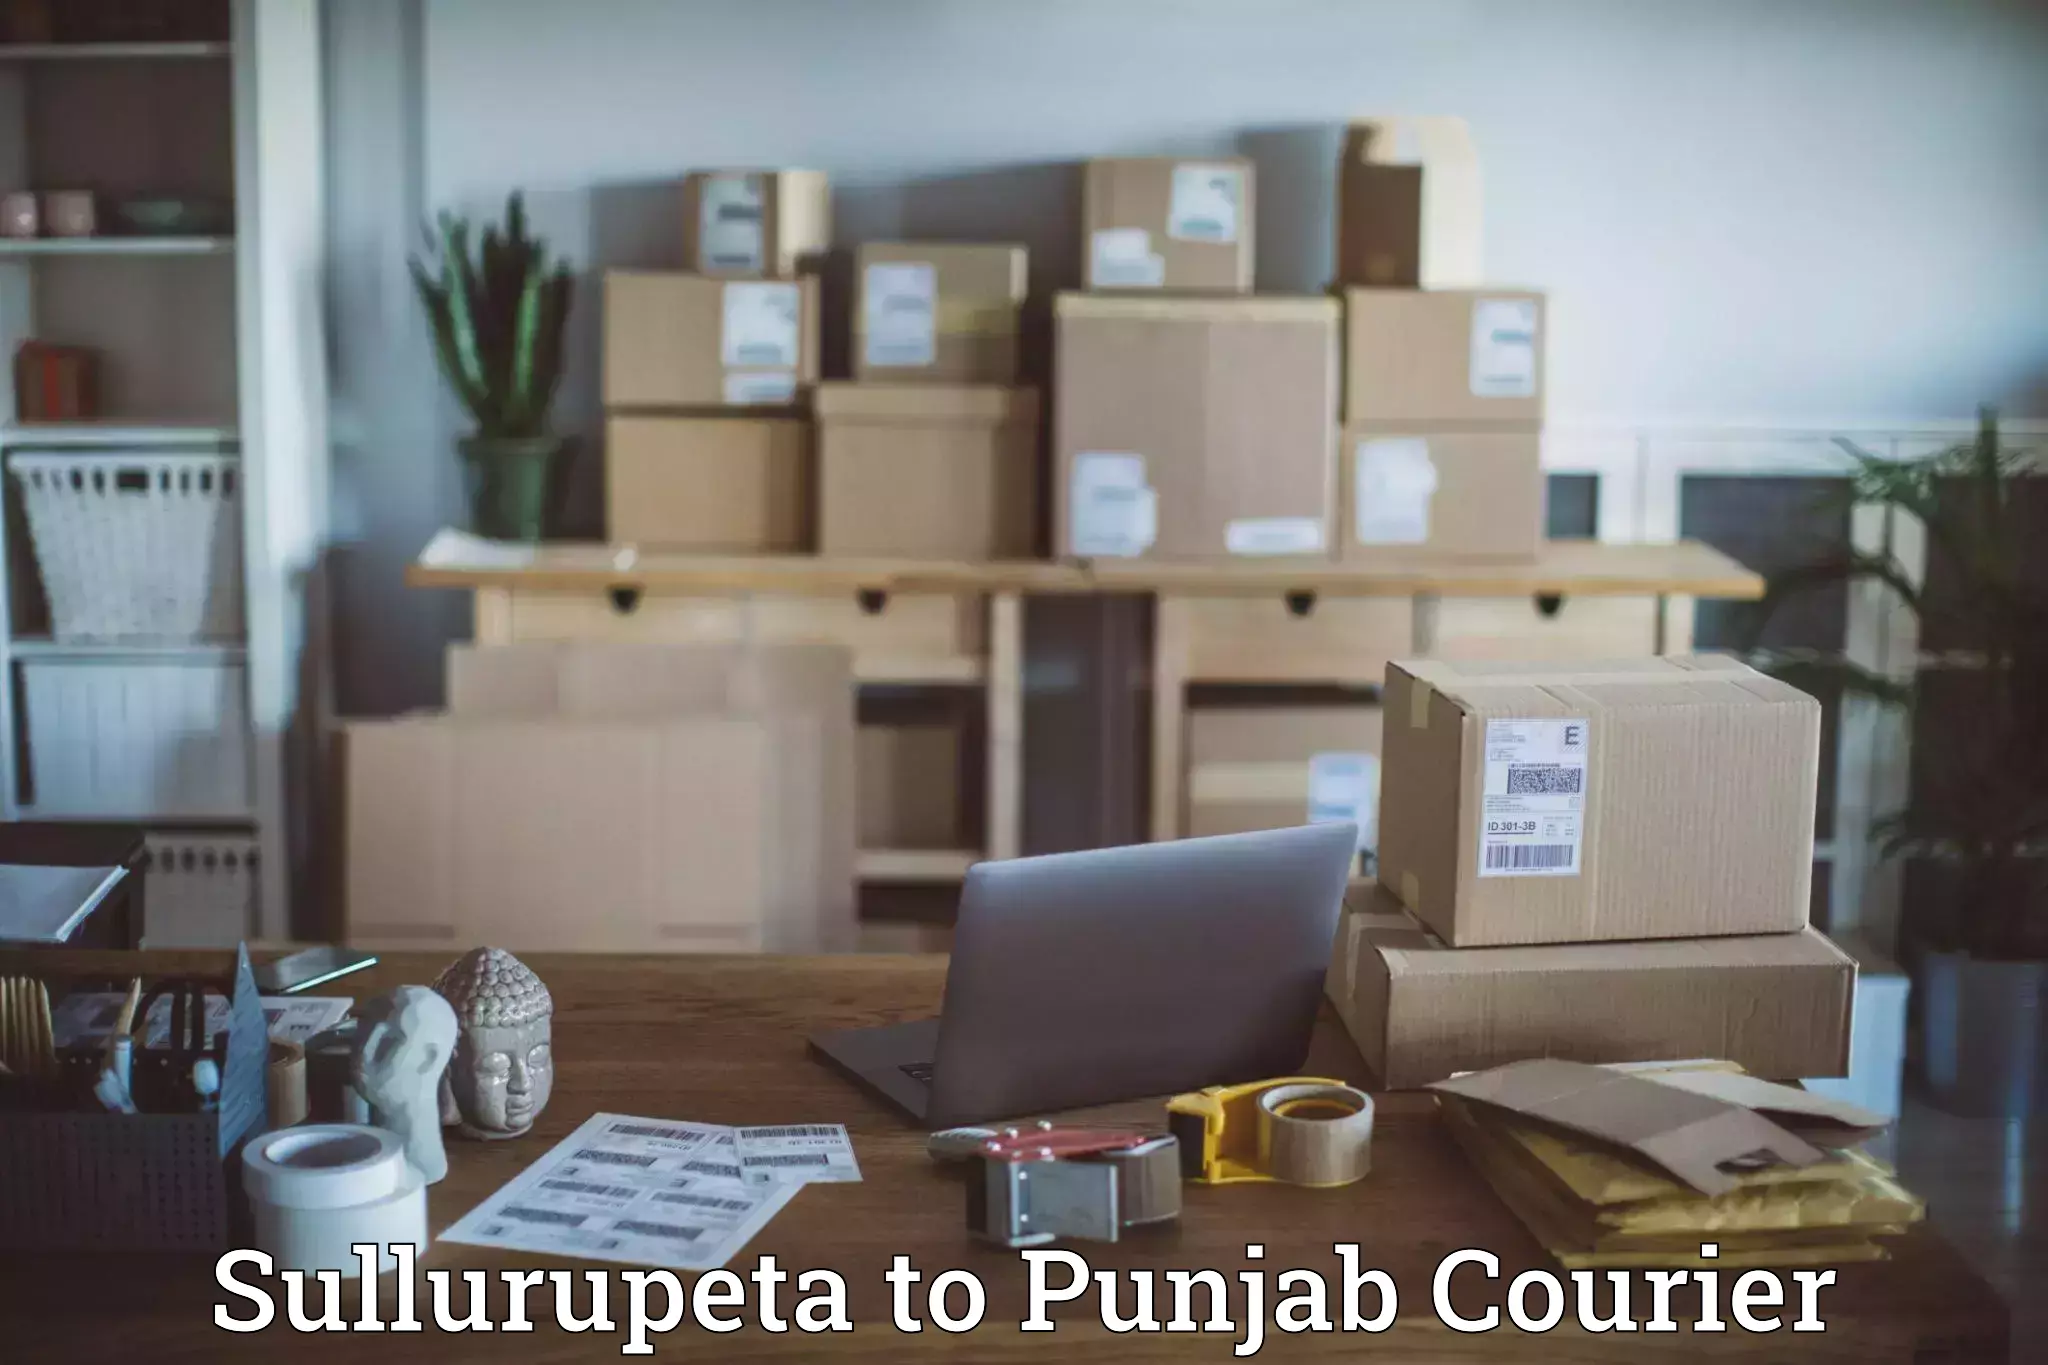 Optimized shipping services Sullurupeta to Central University of Punjab Bathinda